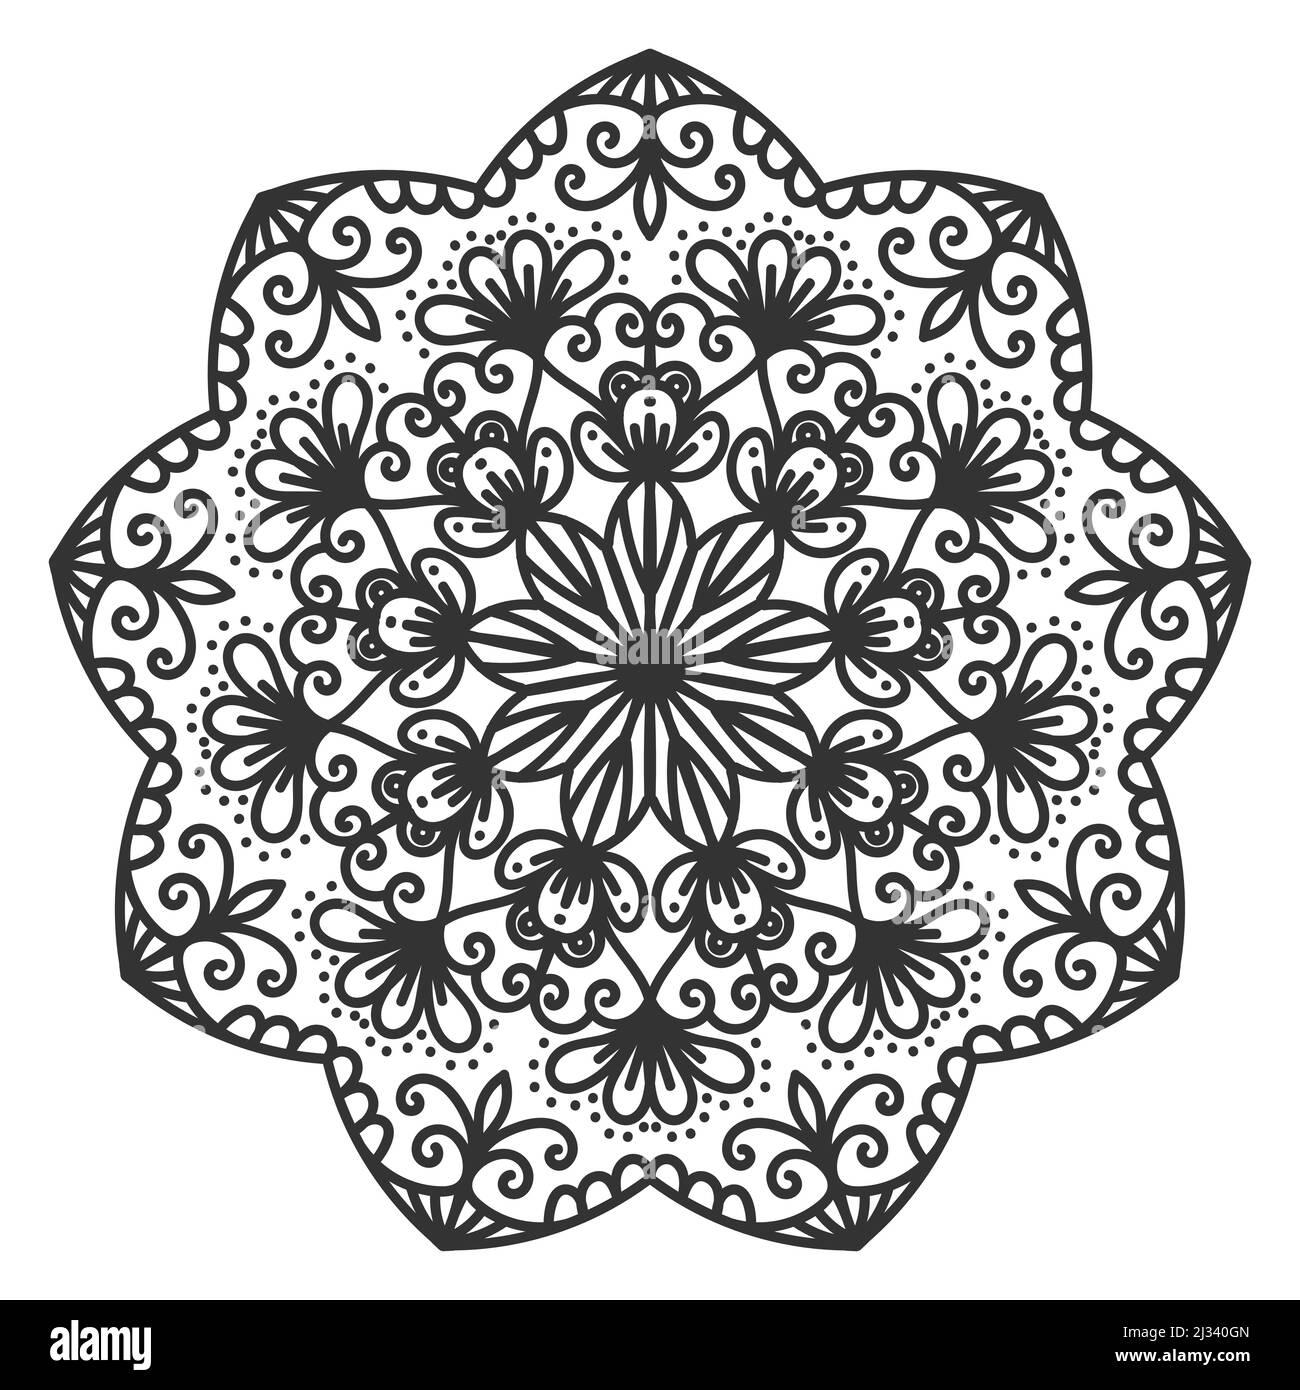 Mandala floral rond. Décoration circulaire de style oriental. Tatouage henné, mehndi. Motif décoratif pour tatouage, logo d'étiquette. Illustration de Vecteur